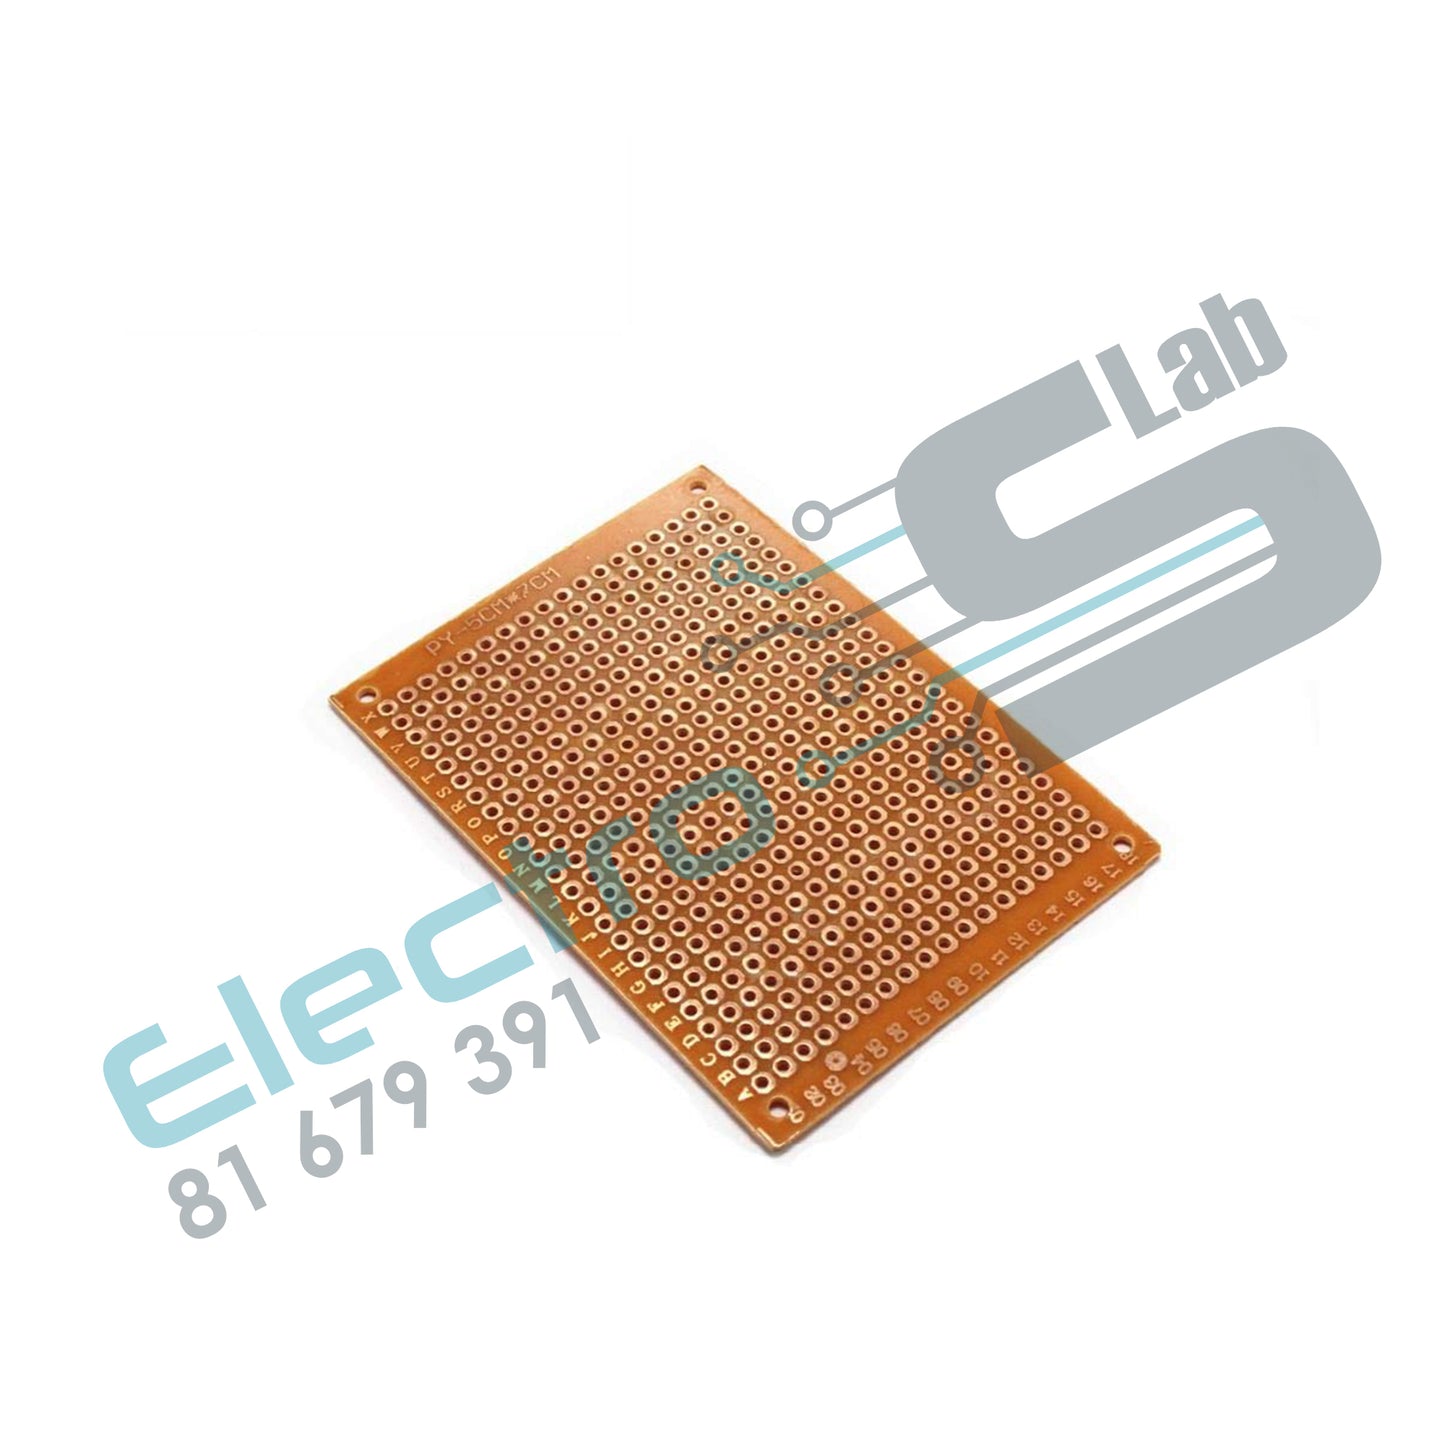 Prototype Paper  Copper PCB UniversalExperiment Matrix Circuit Board 5x7cm Brand